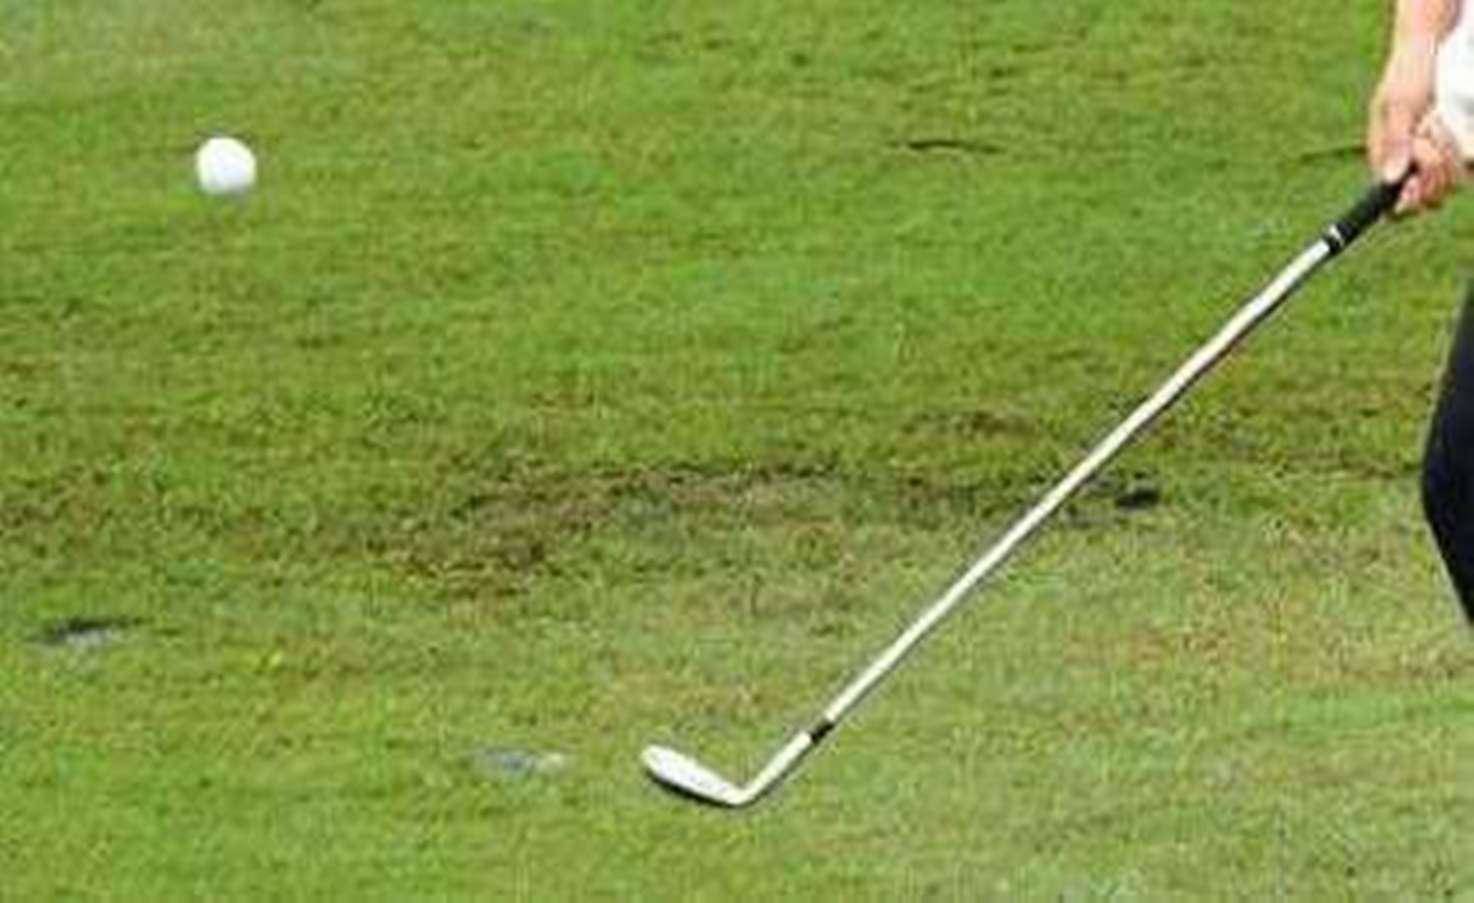 गोल्फ : हांगकांग चैम्पियनशिप में चमके जूनियर गोल्फर